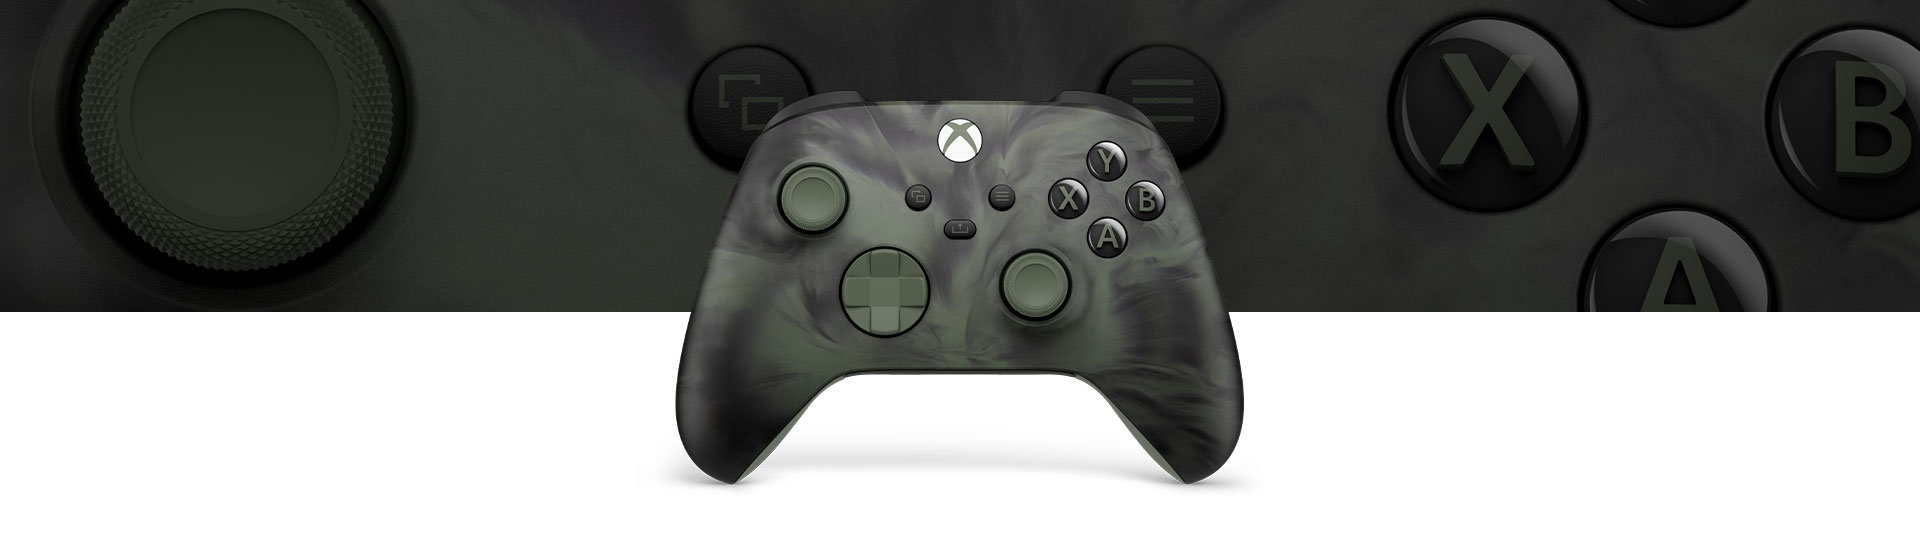 Kontroler bezprzewodowy Xbox w wersji specjalnej Nocturnal Vapor widziany z przodu i na zbliżeniu w tle.